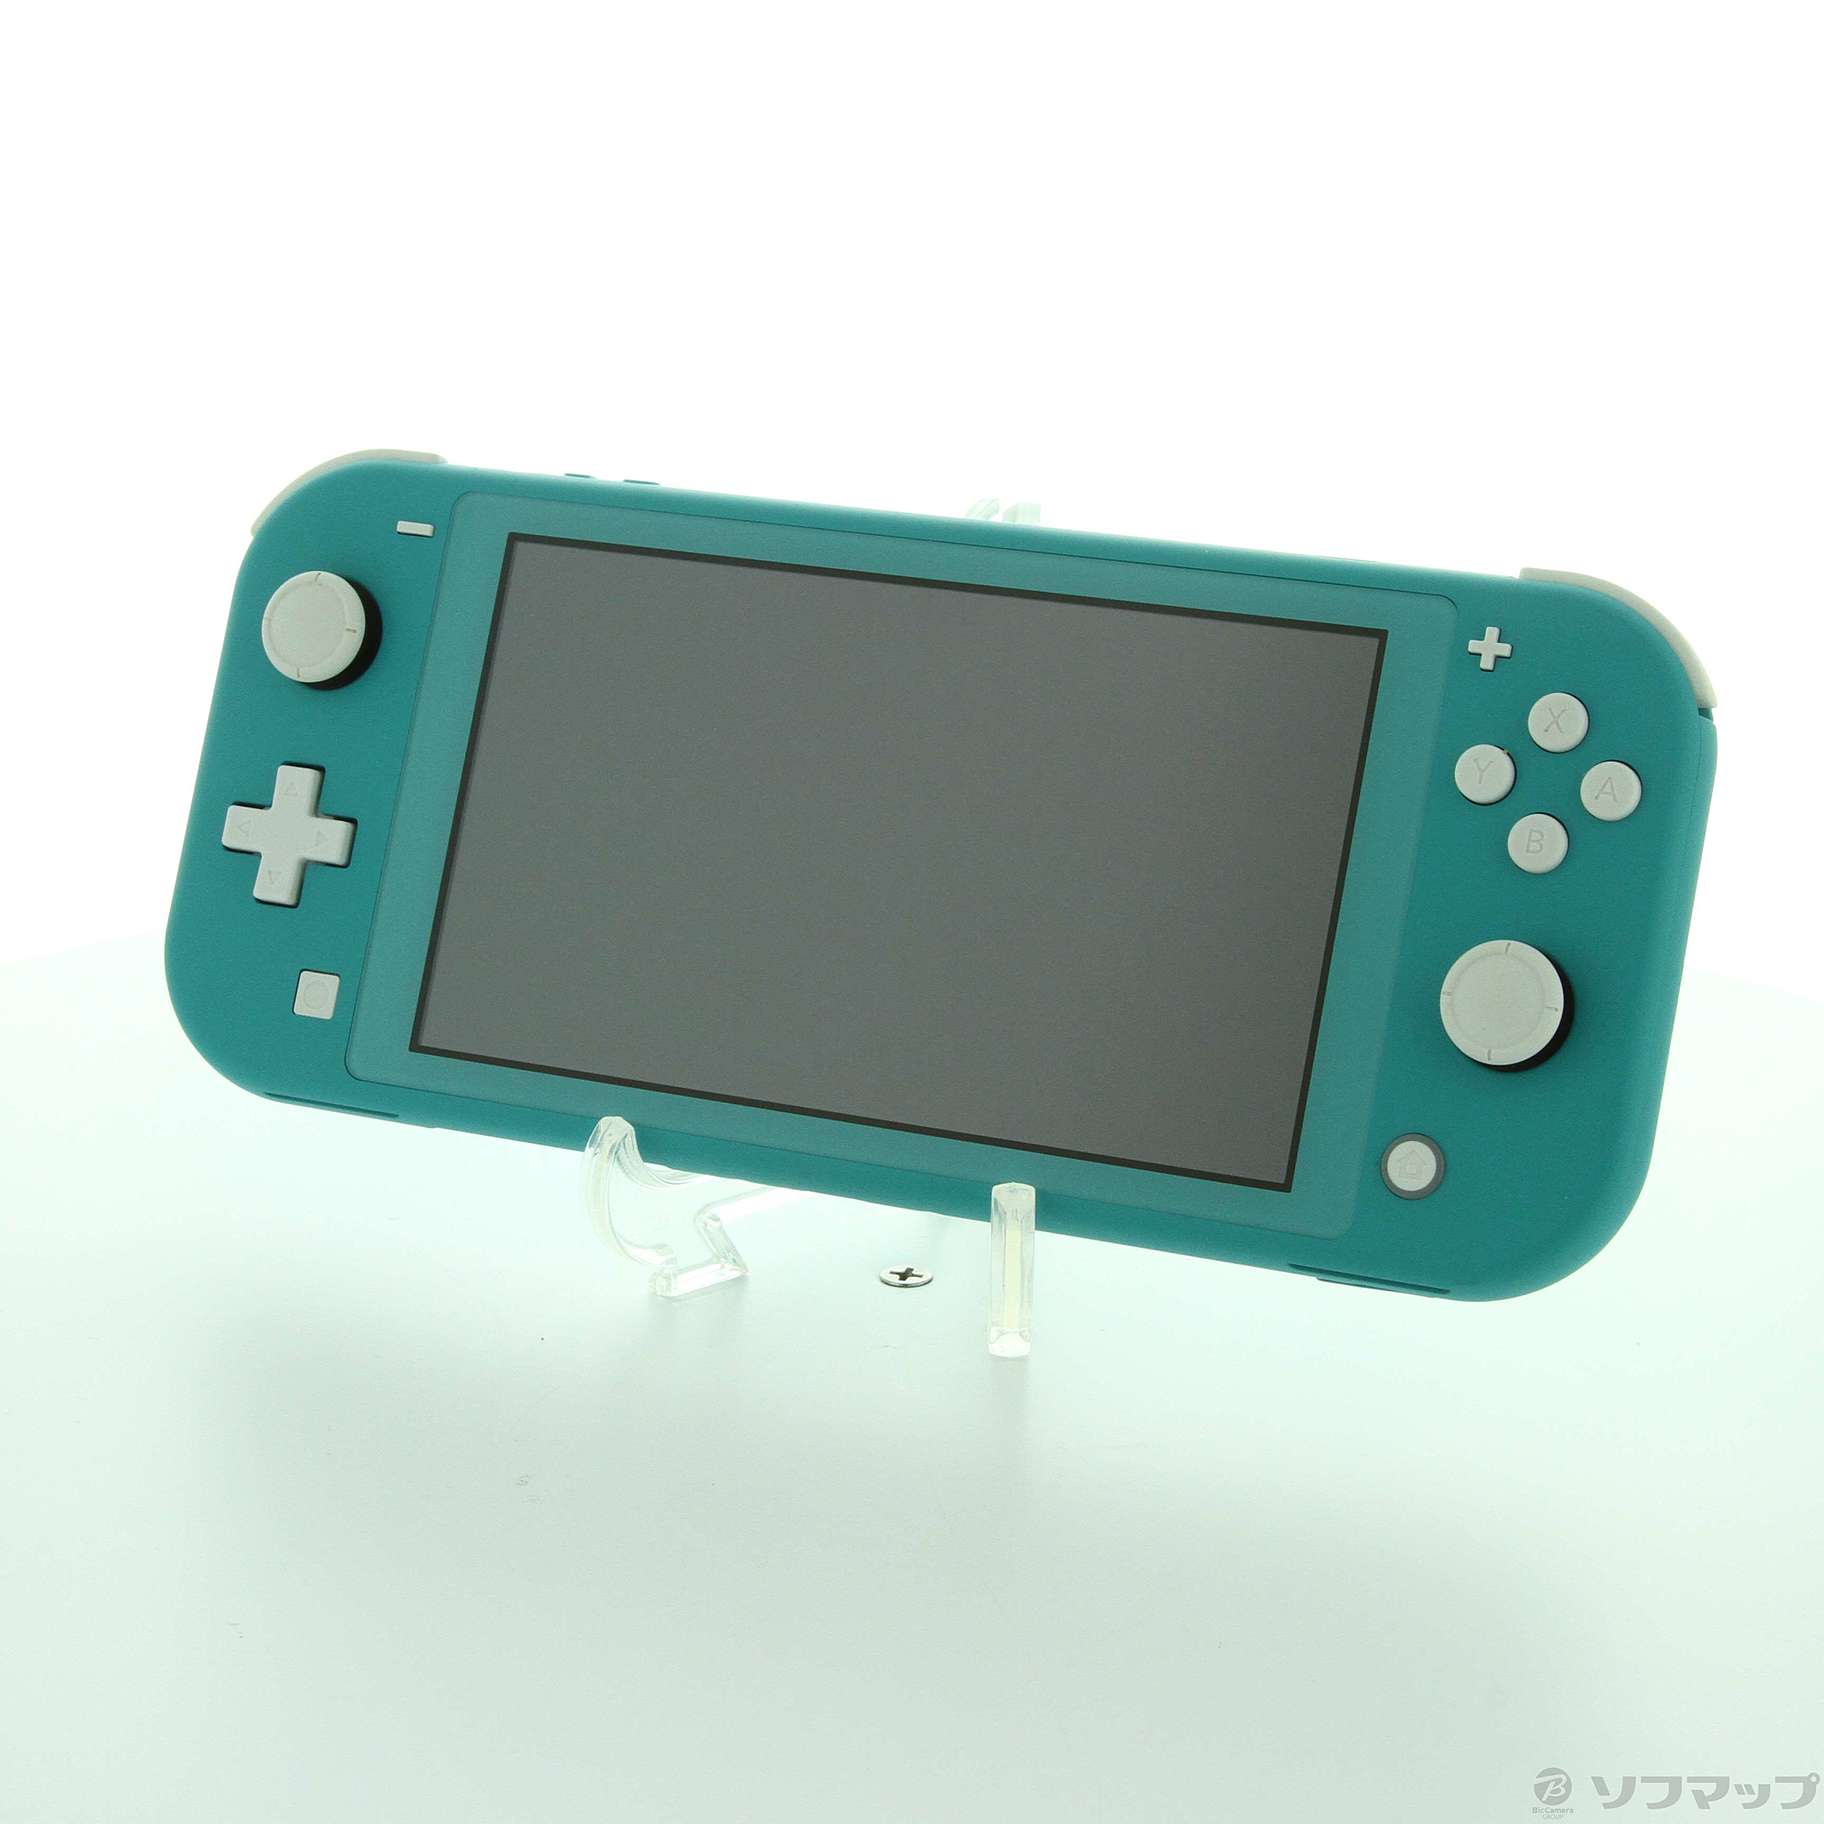 新品 任天堂 Nintendo Switch lite ターコイズ